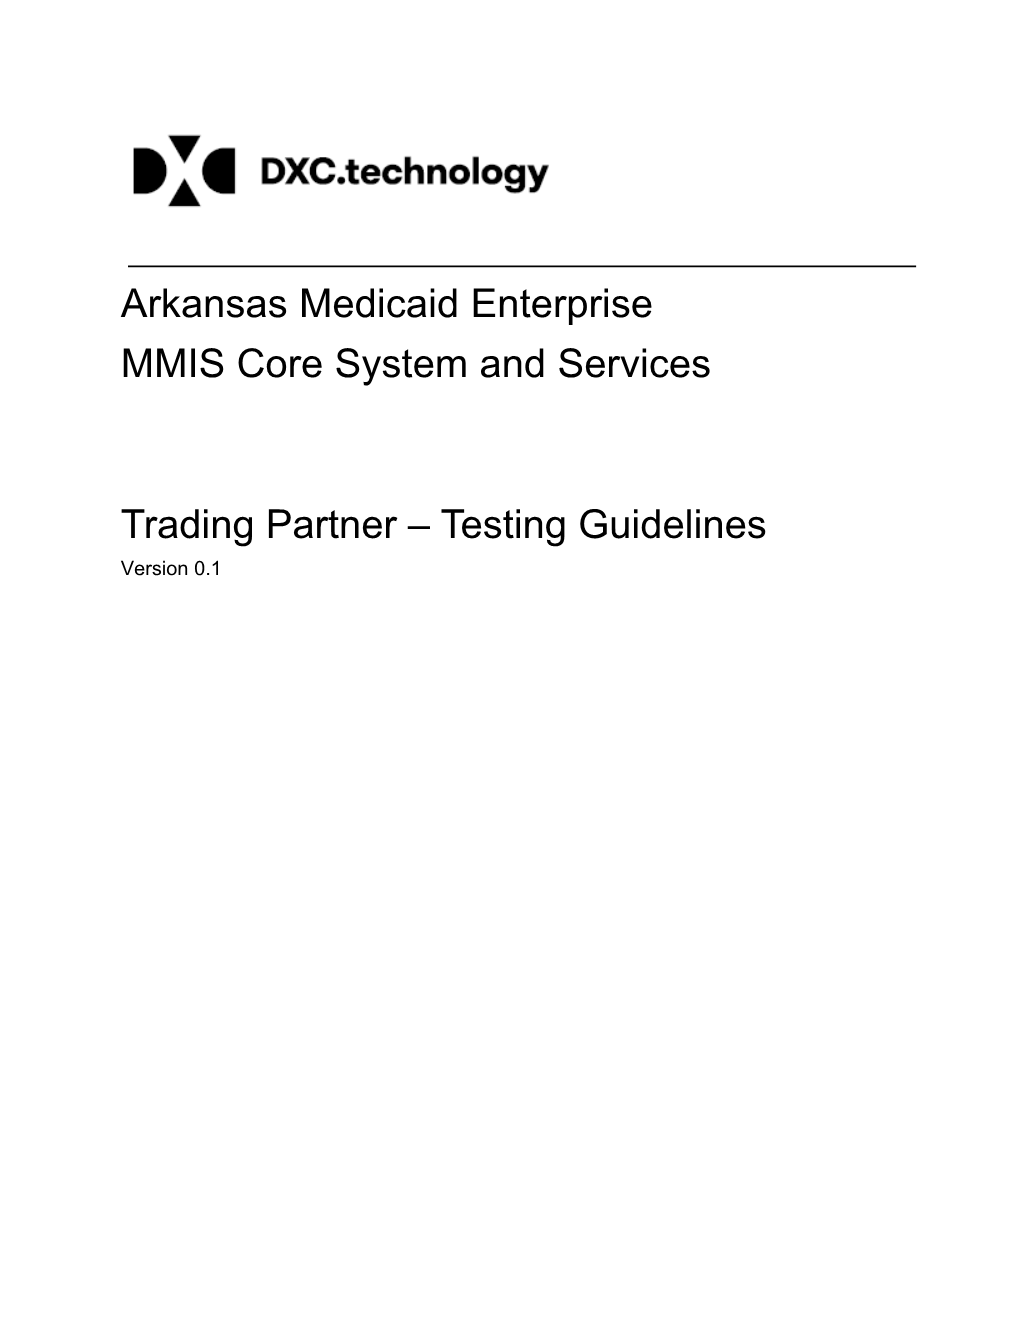 Trading Partner Testing Guidelines